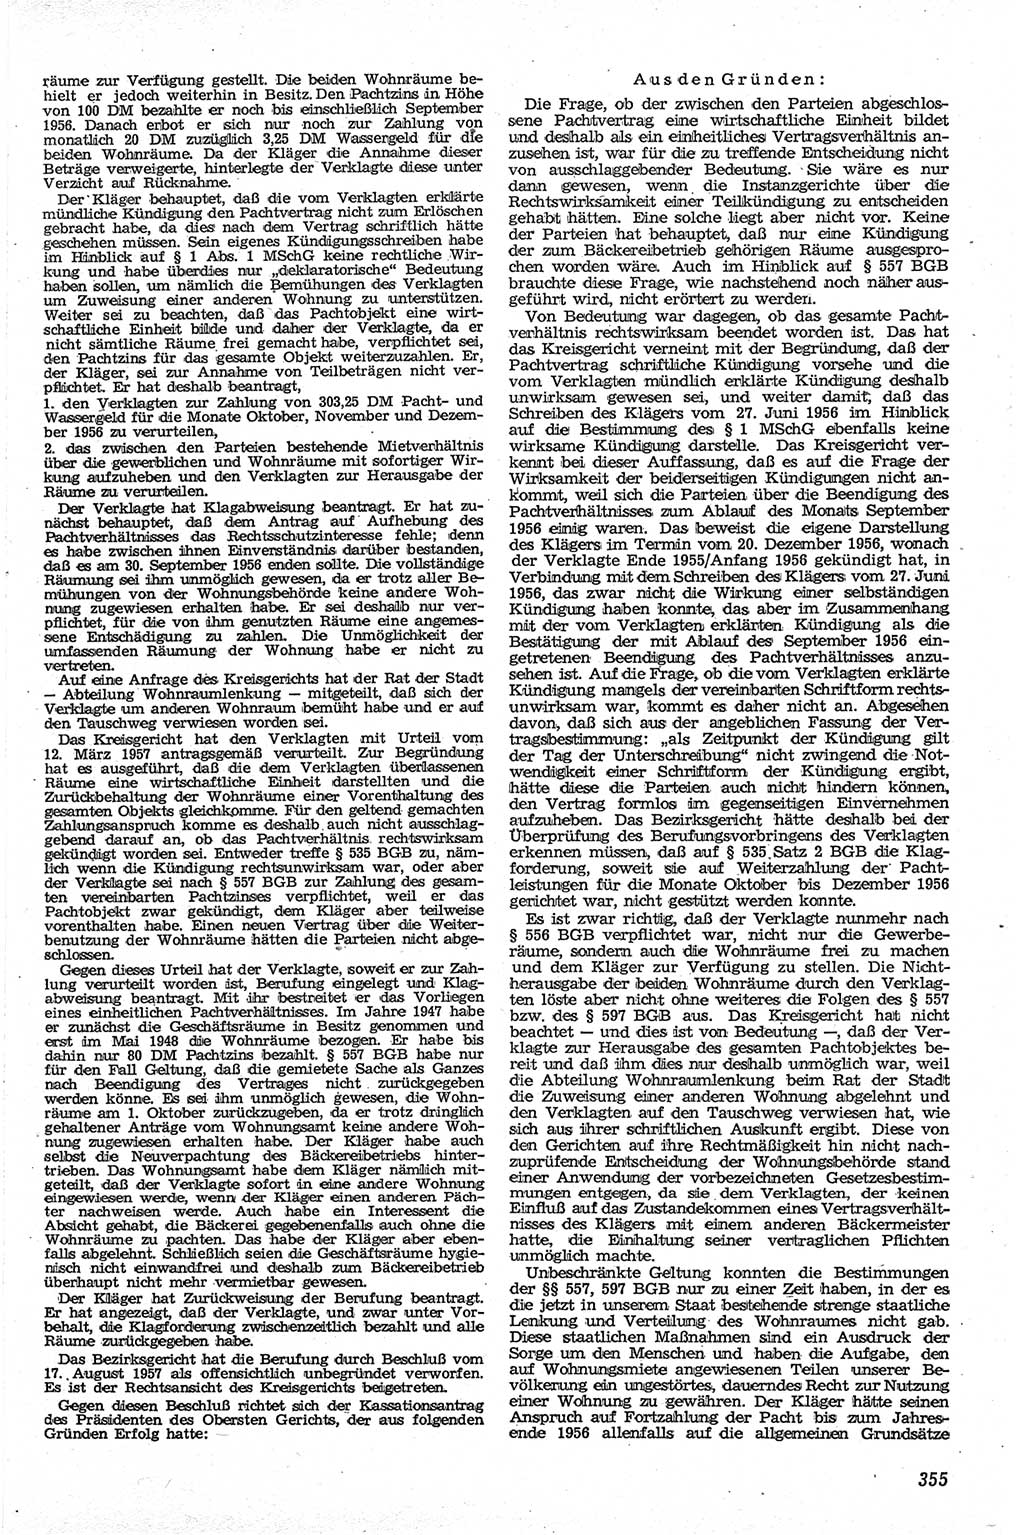 Neue Justiz (NJ), Zeitschrift für Recht und Rechtswissenschaft [Deutsche Demokratische Republik (DDR)], 13. Jahrgang 1959, Seite 355 (NJ DDR 1959, S. 355)